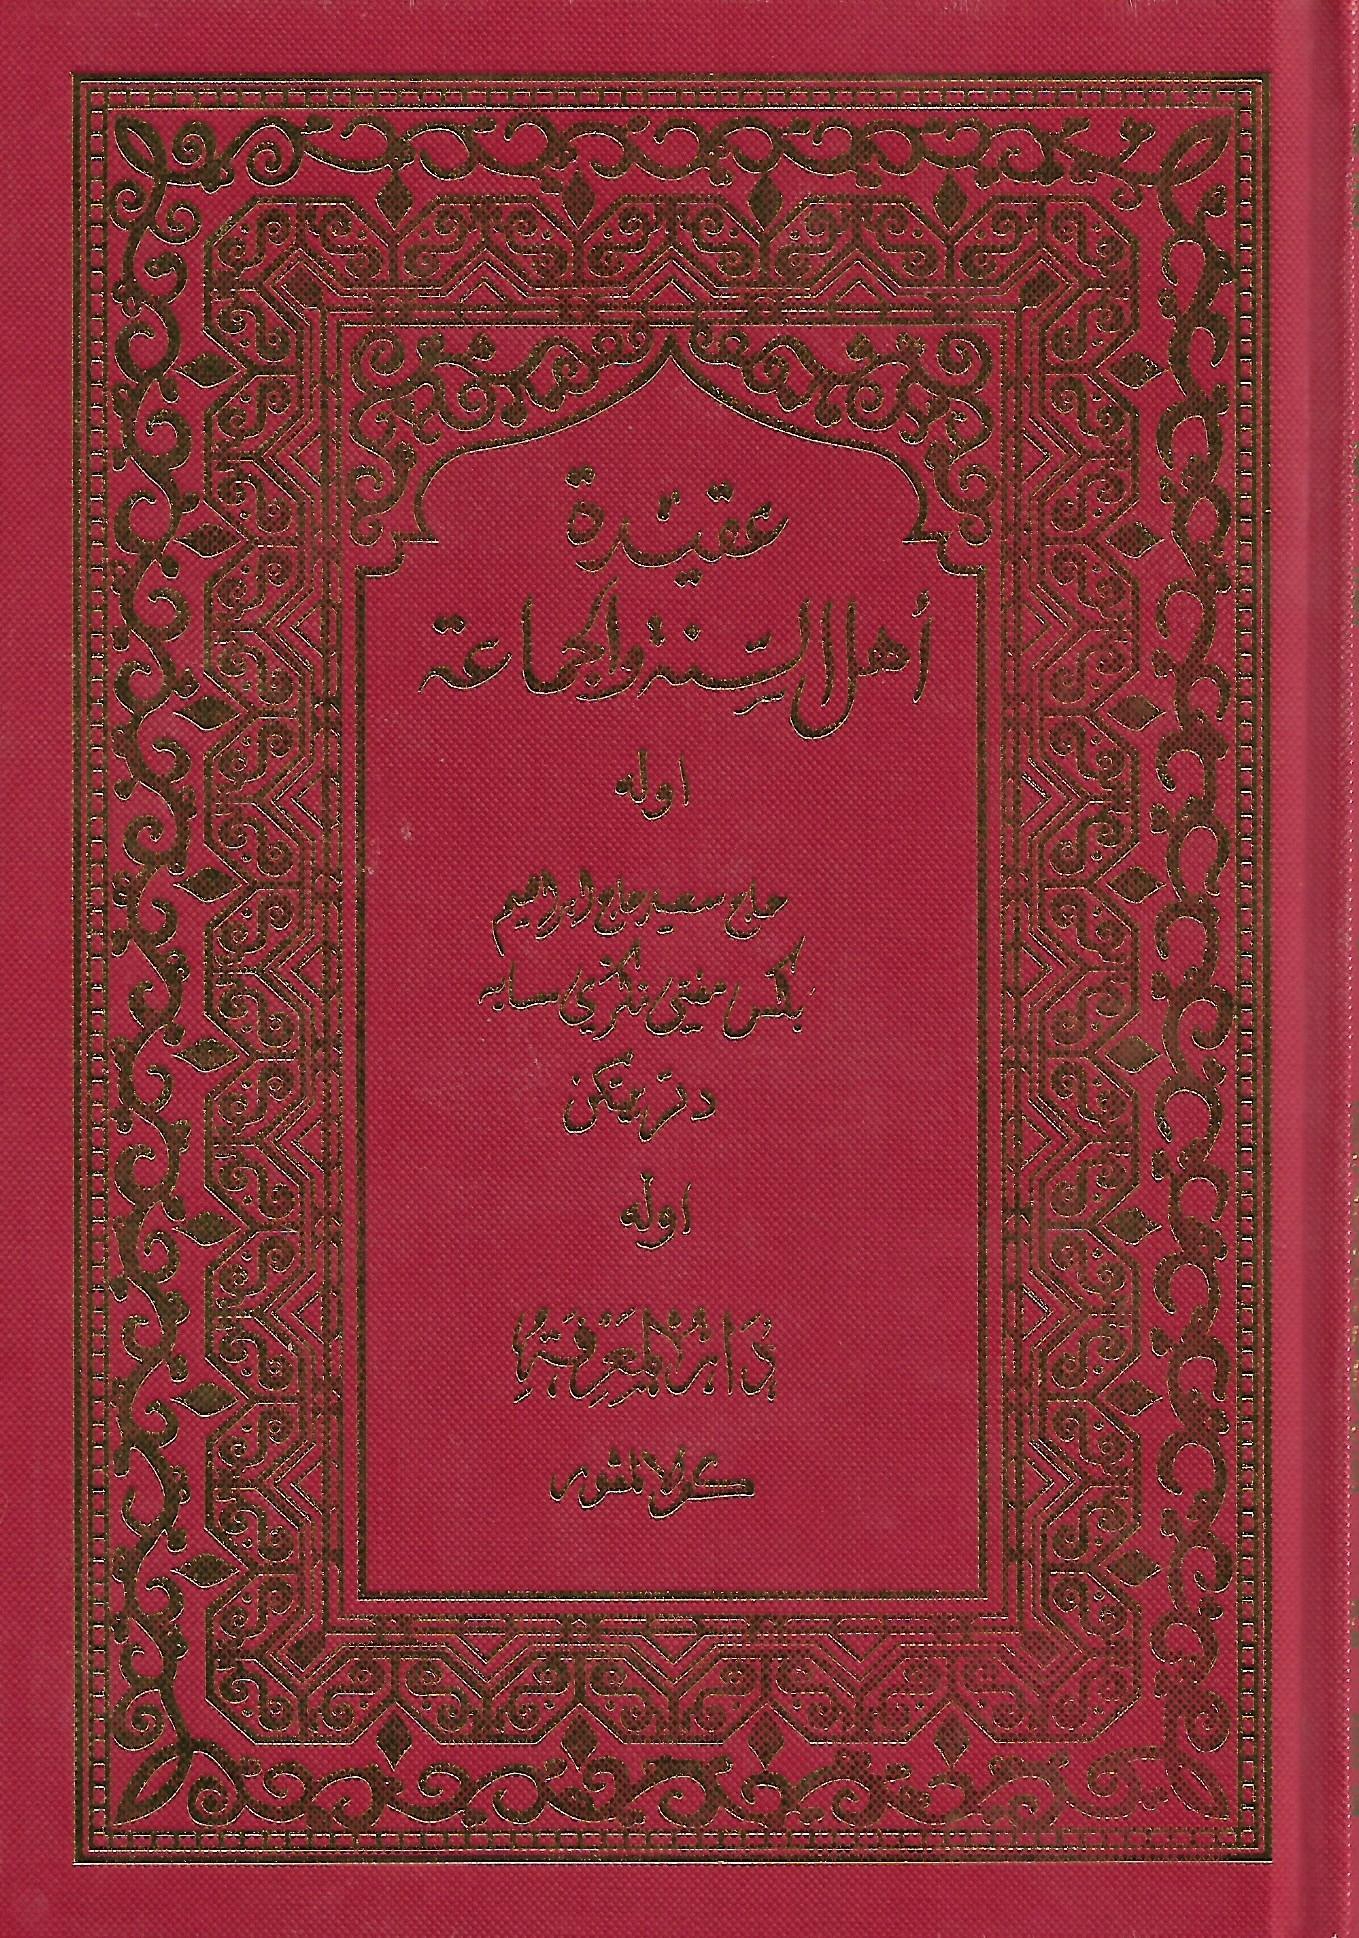 Aqidah Ahli Sunnah Waljamaah (Jawi) – Pustaka Mukmin KL 